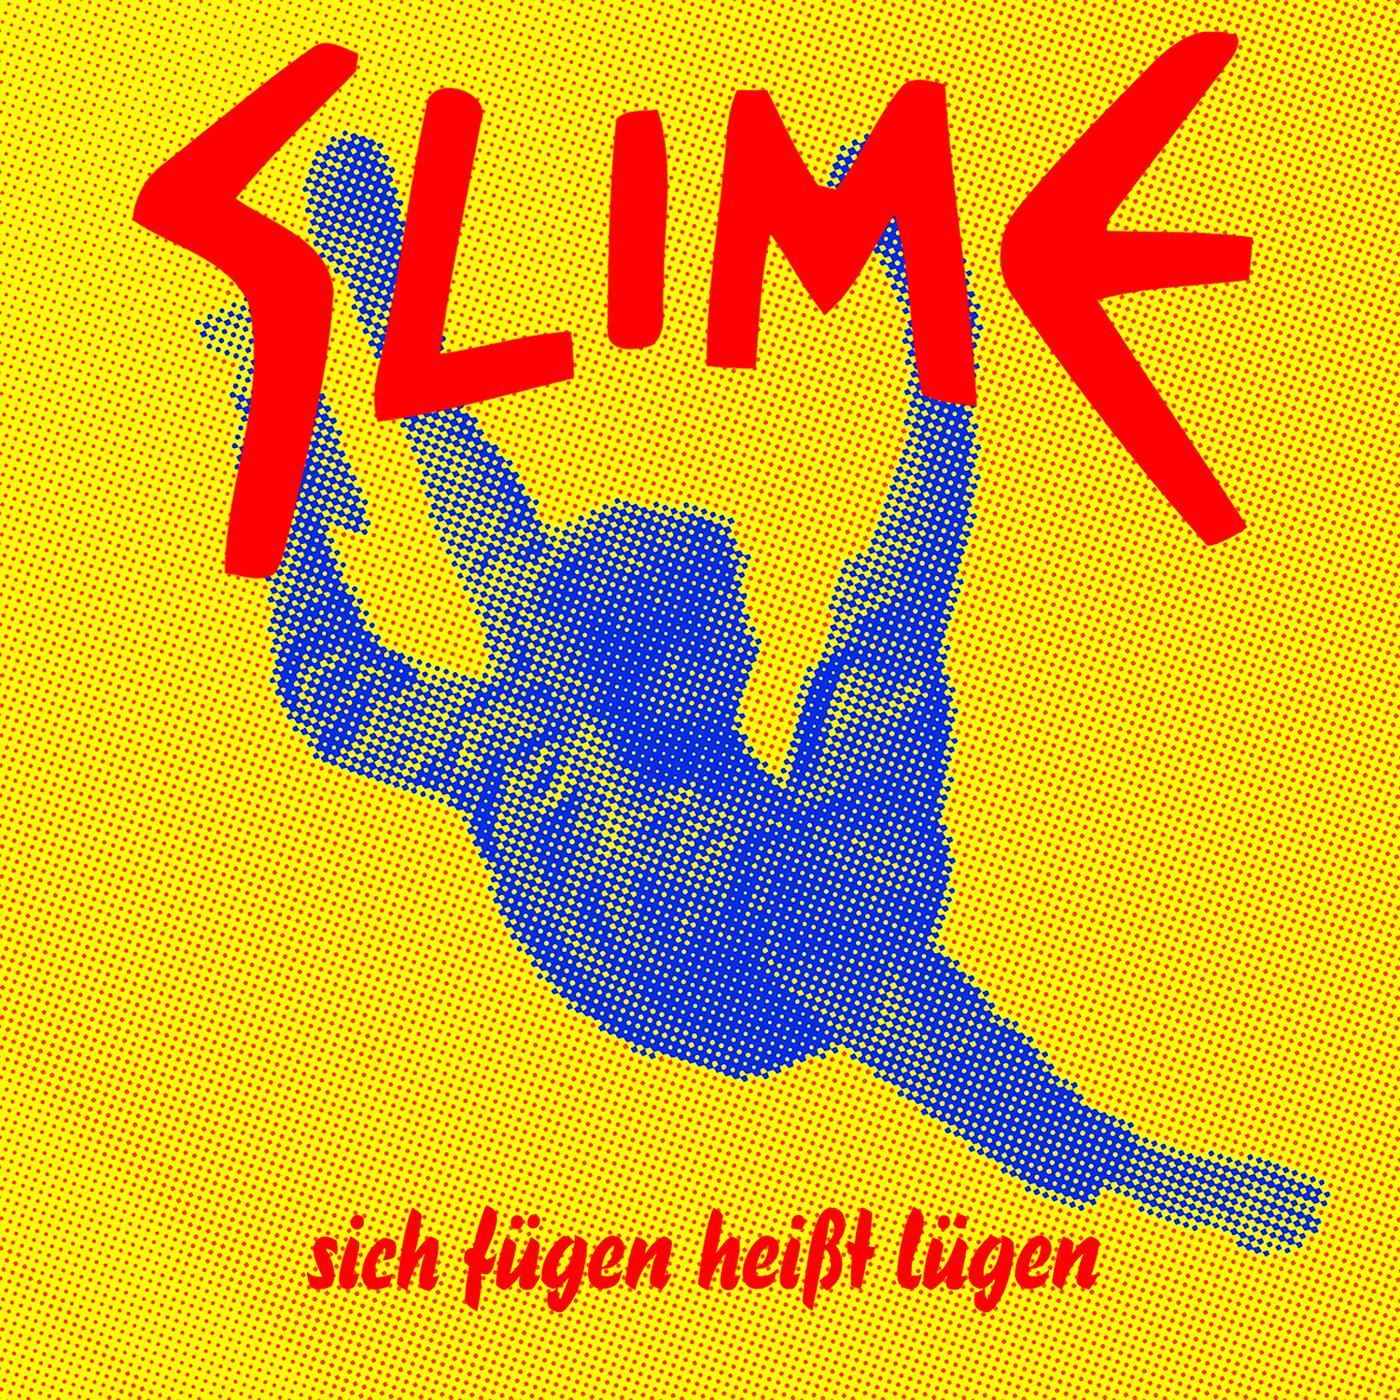 Slime - Deutschland (Live SO36 2010) [Bonus track]